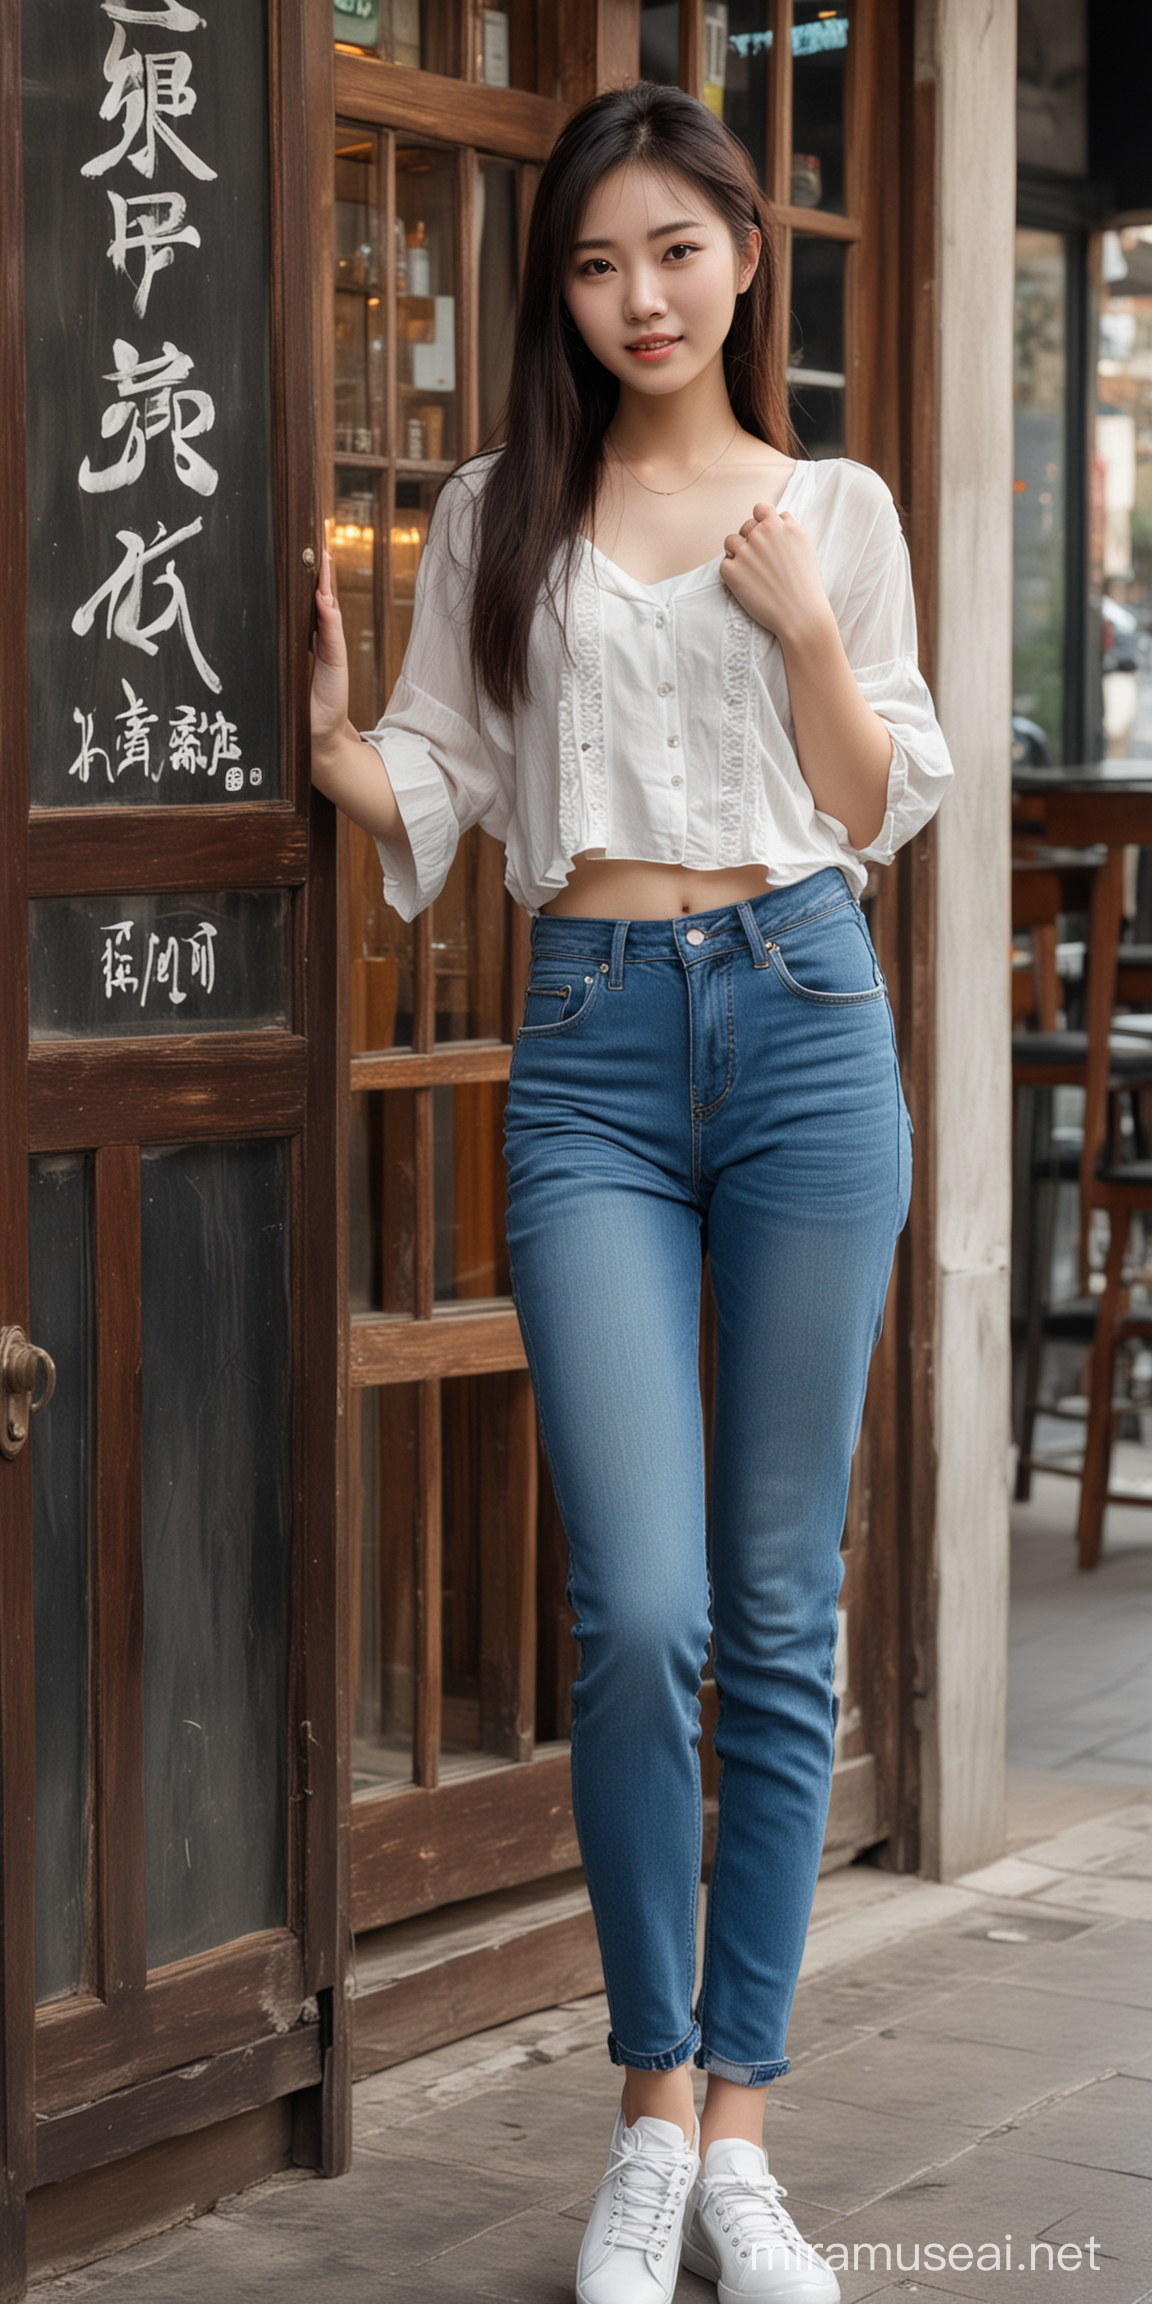 19岁中国美女，长得像林青霞，穿着非常时尚的服装，裤子是牛仔裤，在一个酒吧门口。